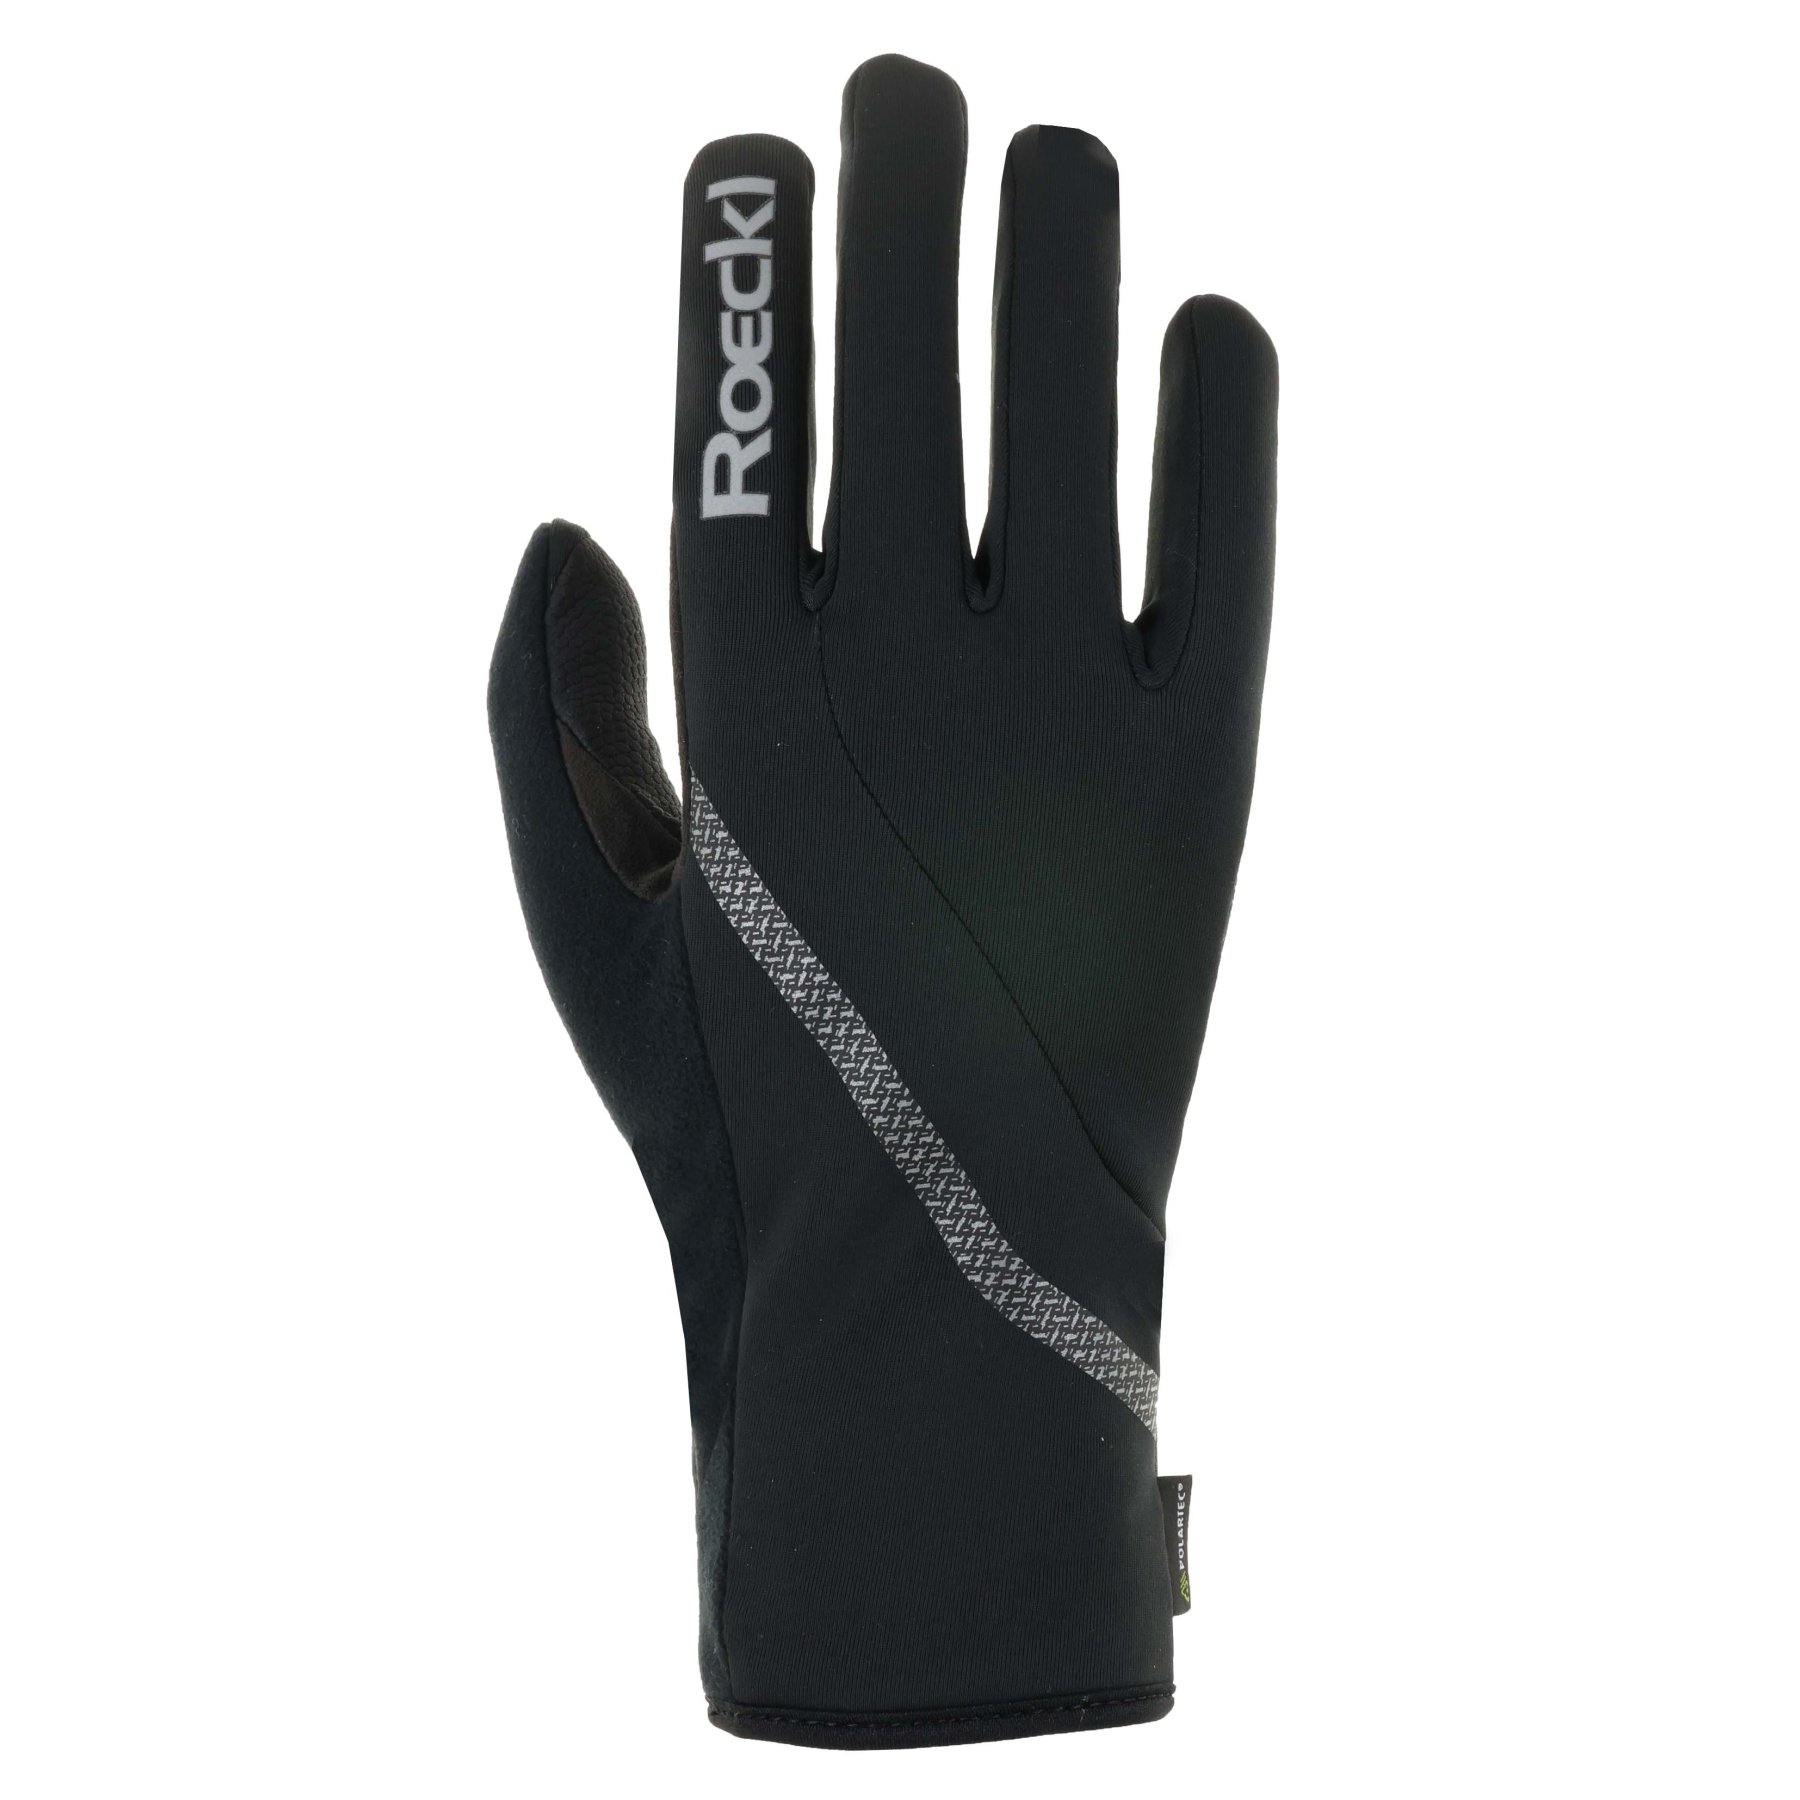 Produktbild von Roeckl Sports Lotorp Winterhandschuhe - schwarz 9000